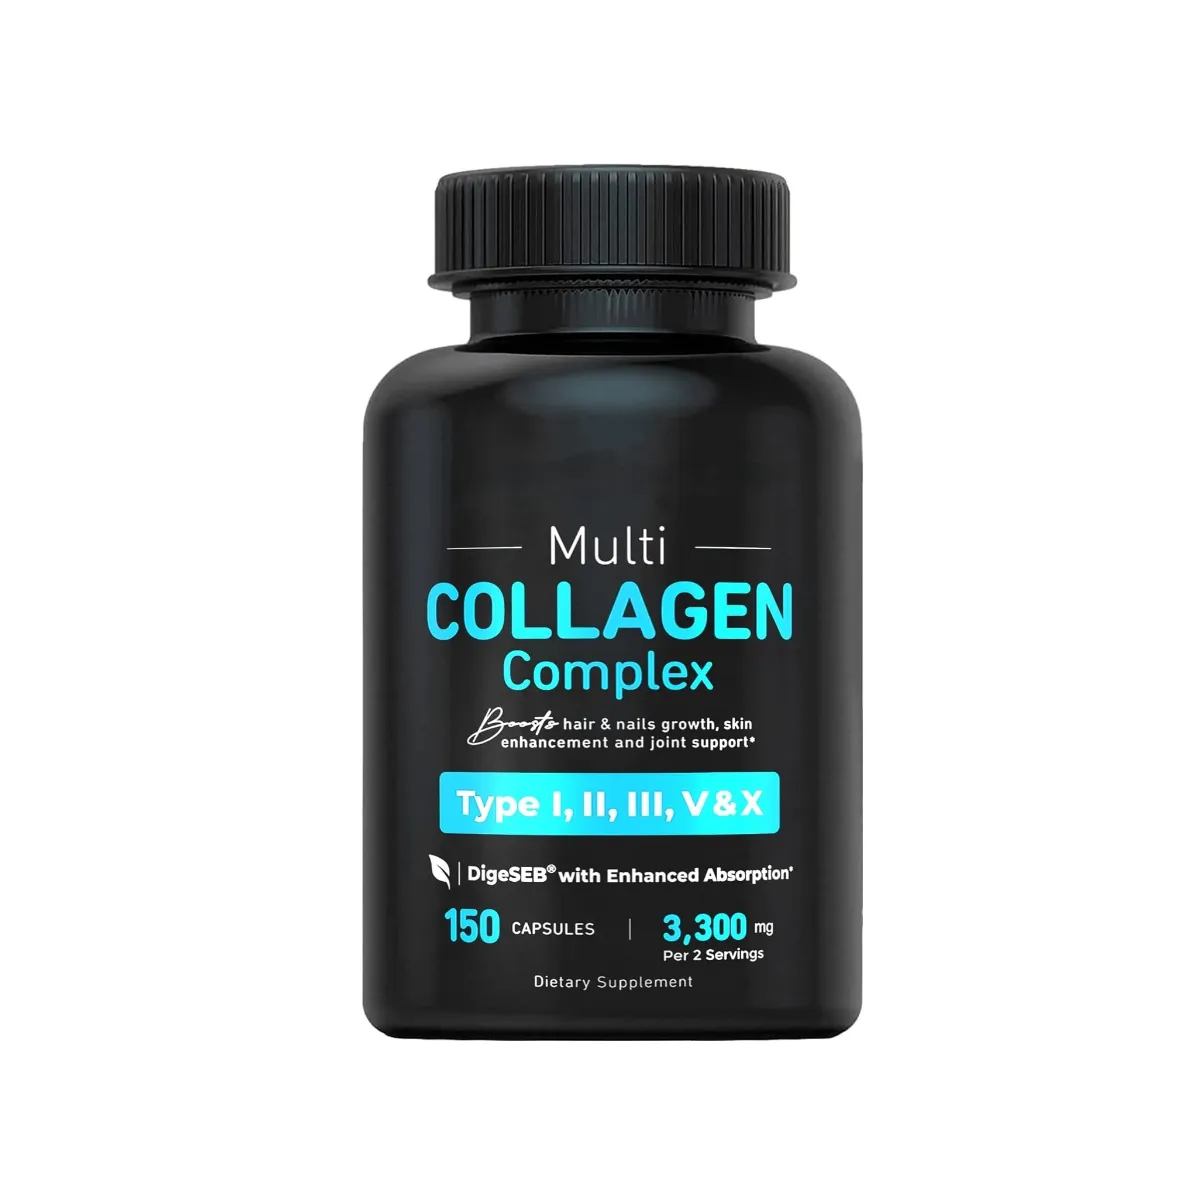 كبسولات Beyond Collagen متعددة الكولاجين مختلطة بالبيوتين وفيتامين C للشعر والجلد والأظافر بملصق خاص